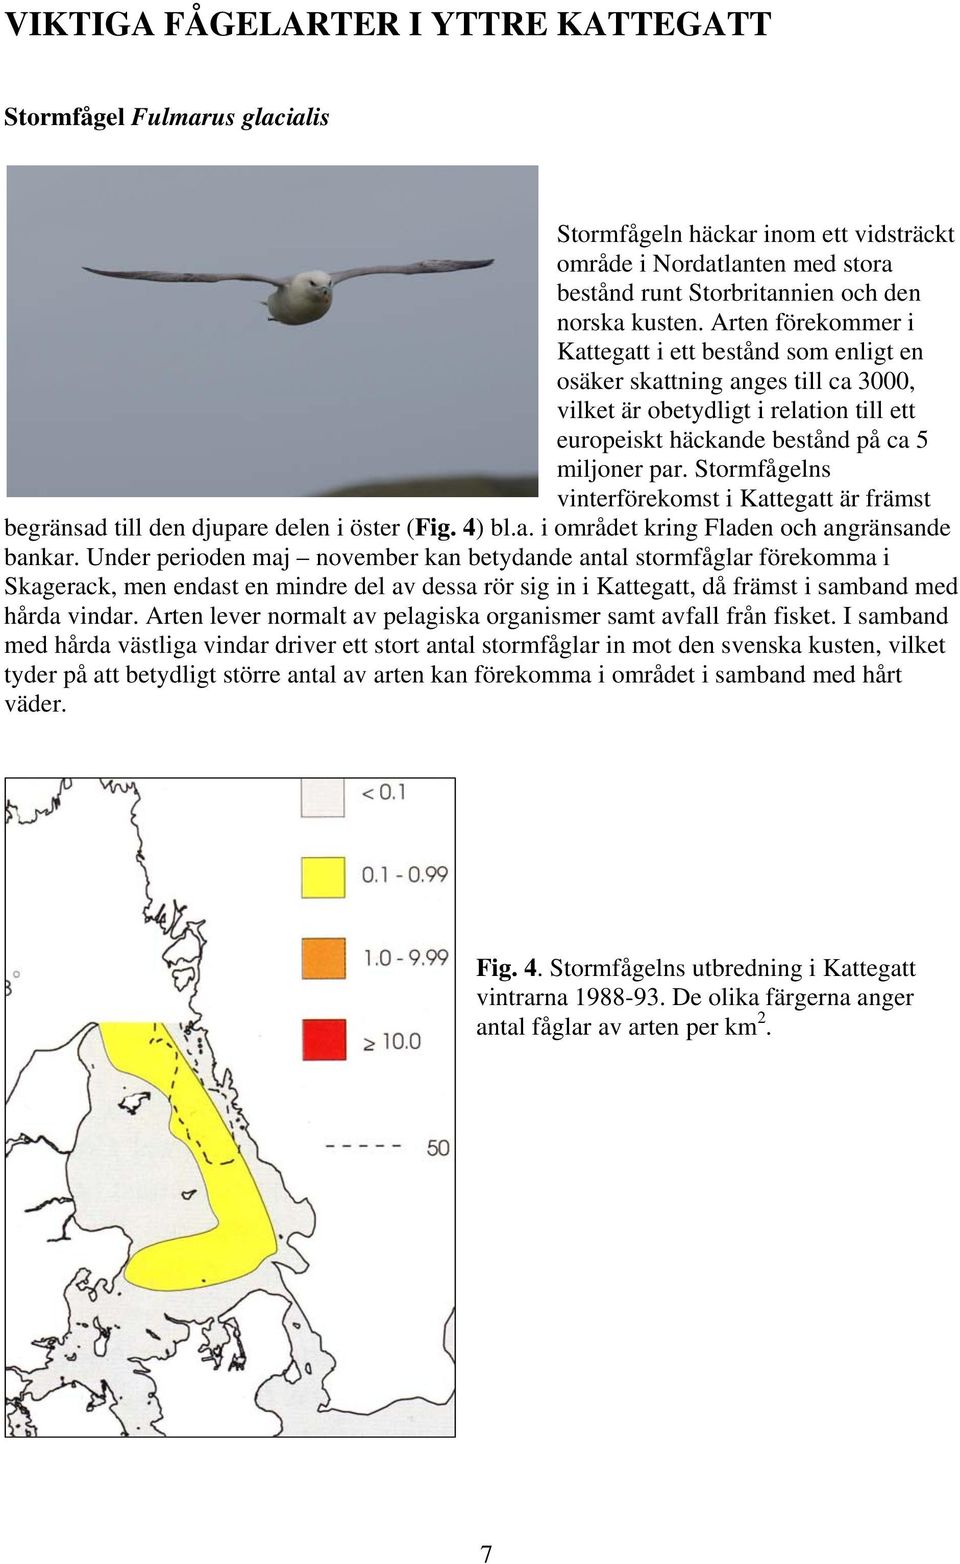 Stormfågelns vinterförekomst i Kattegatt är främst begränsad till den djupare delen i öster (Fig. 4) bl.a. i området kring Fladen och angränsande bankar.